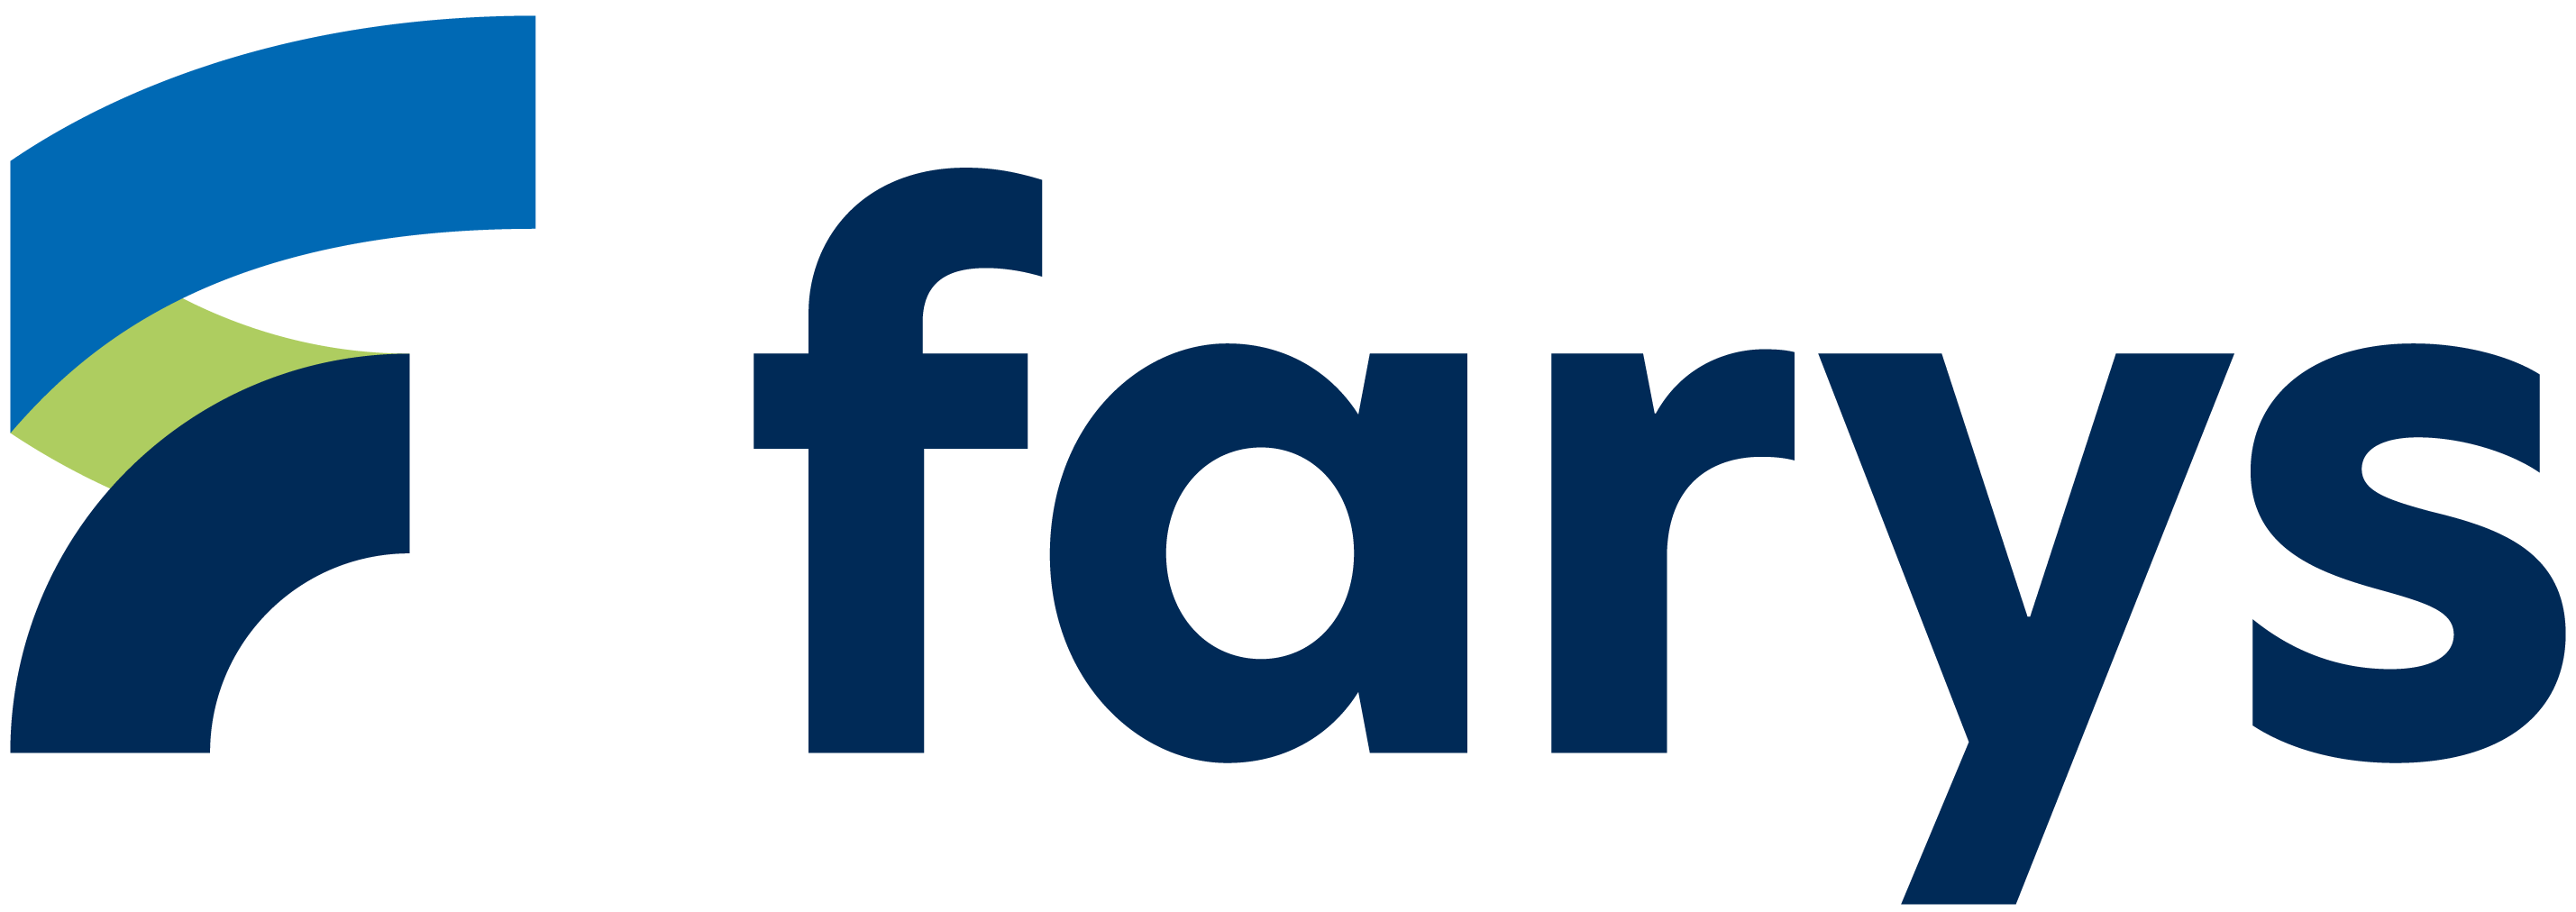 logo-farys__2_.png